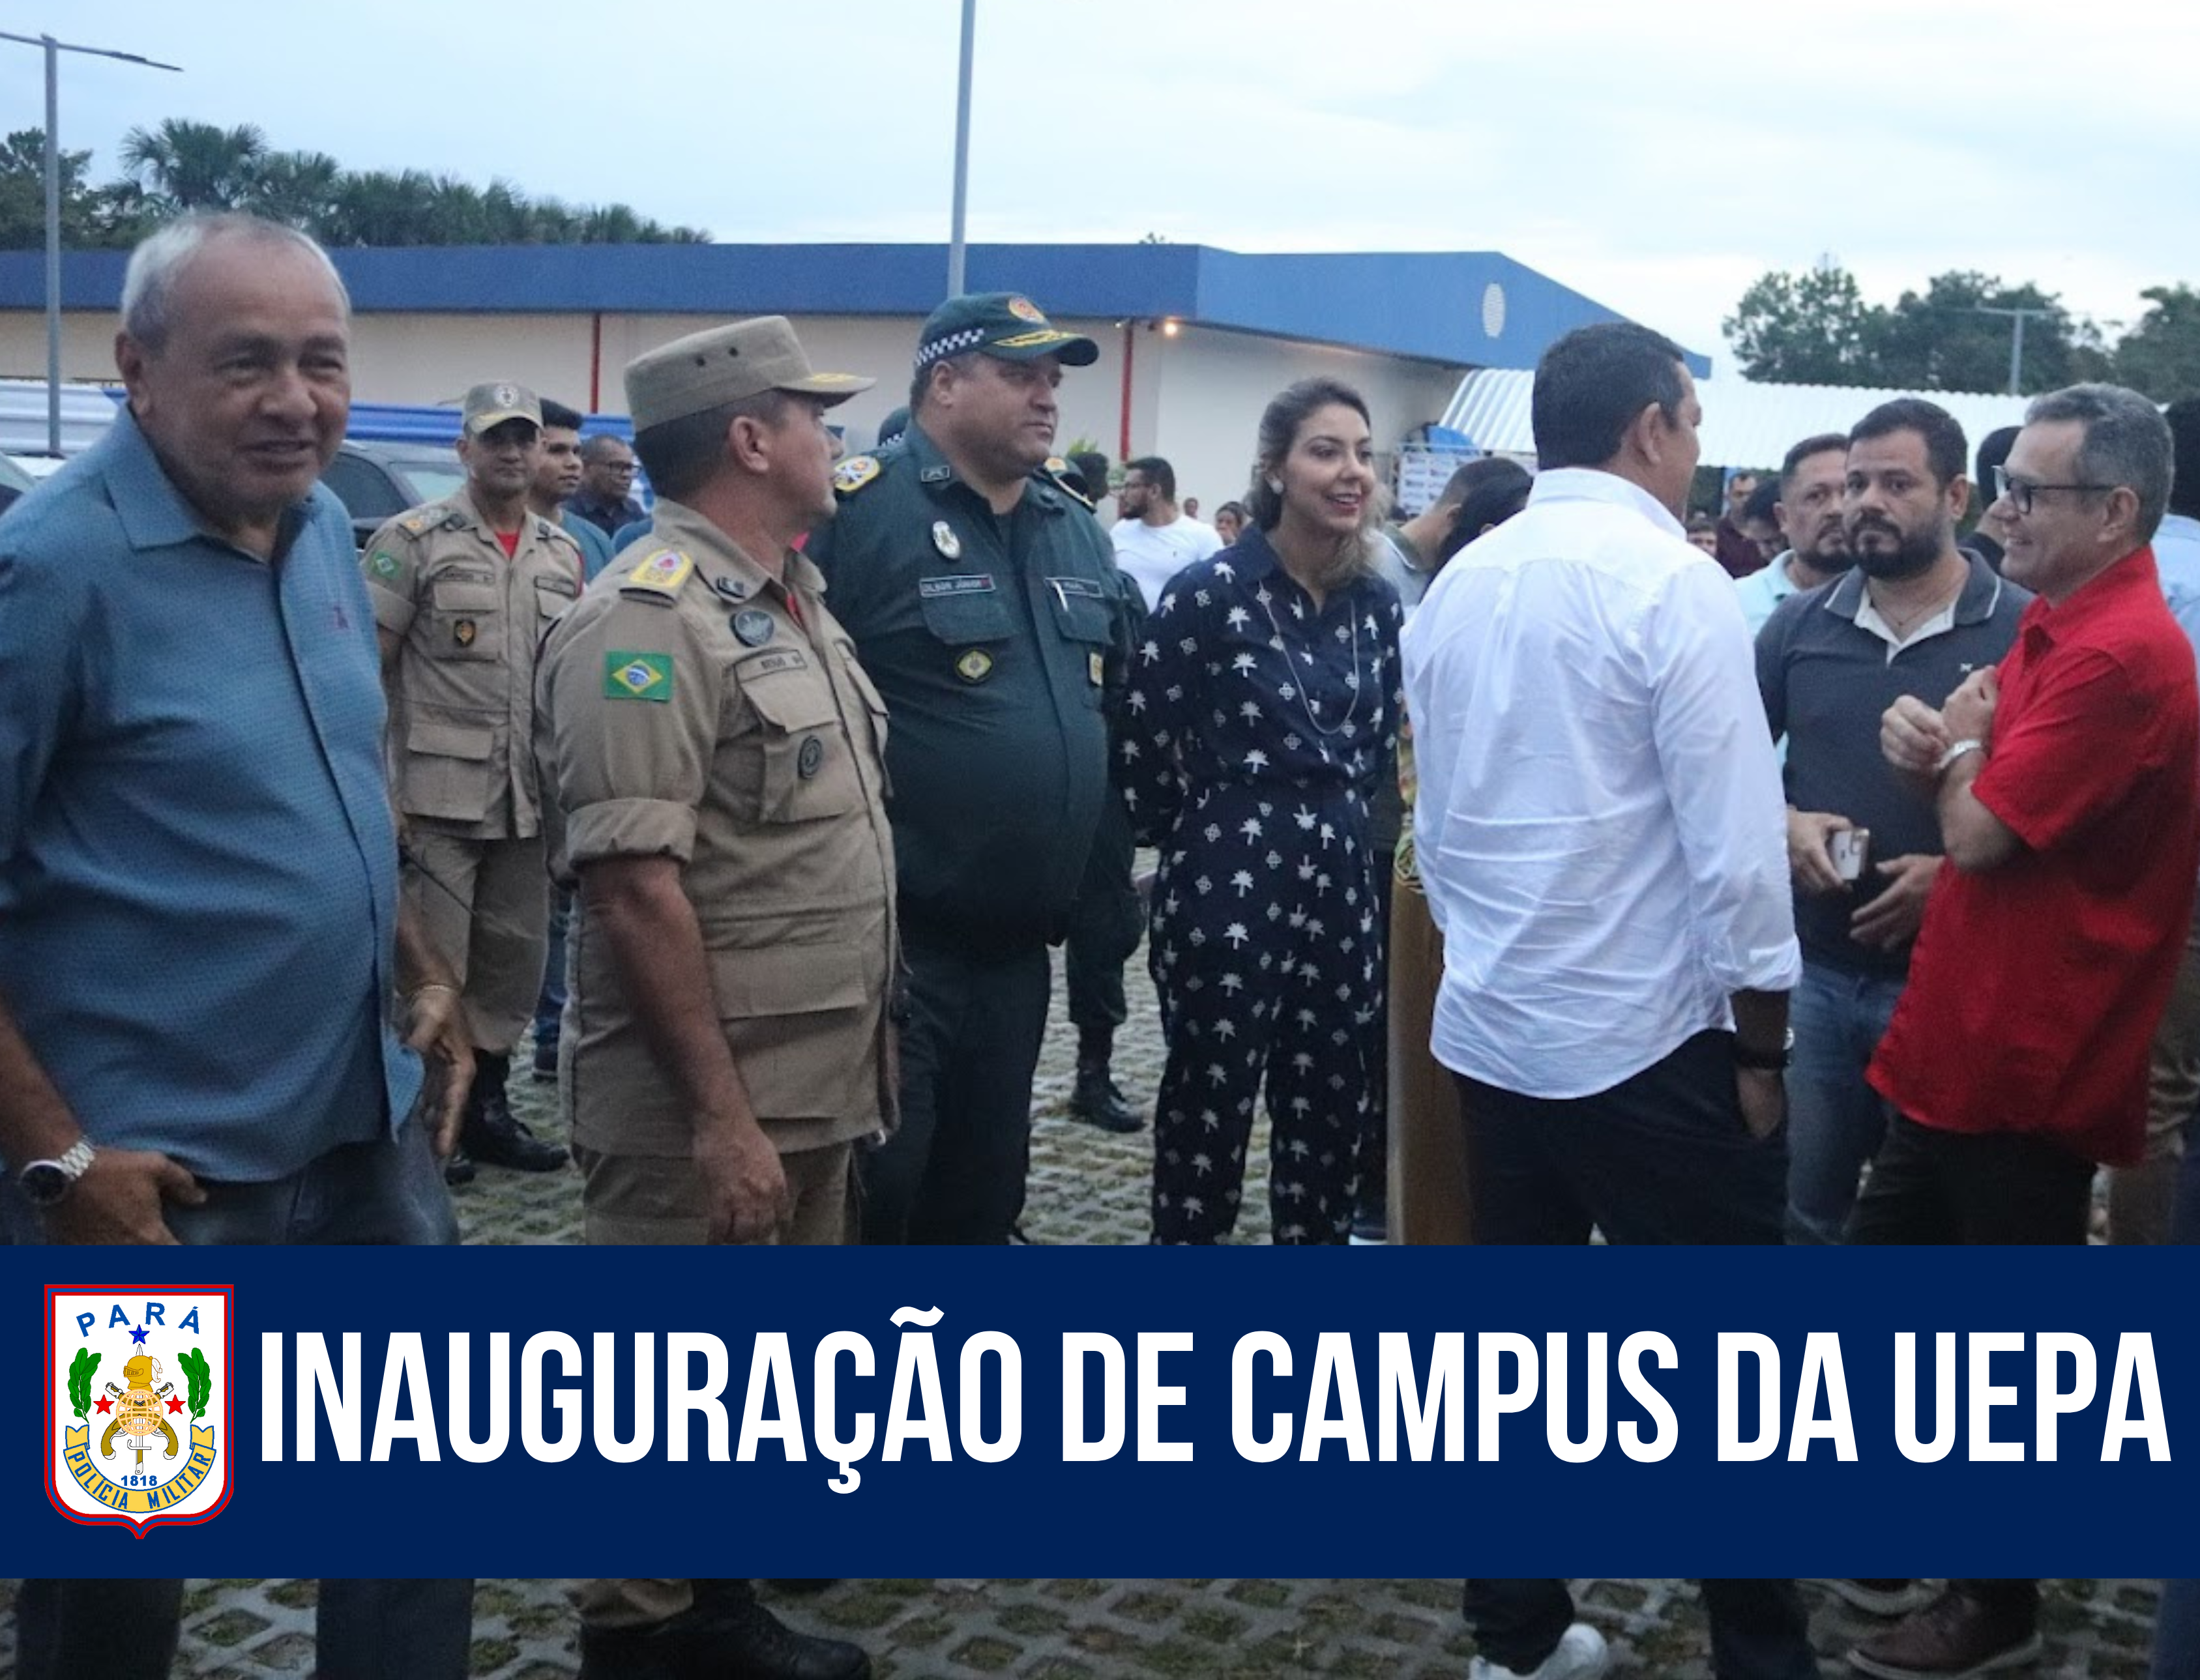 Comandante-Geral da PM participa da inauguração de campus da UEPA em Ananindeua